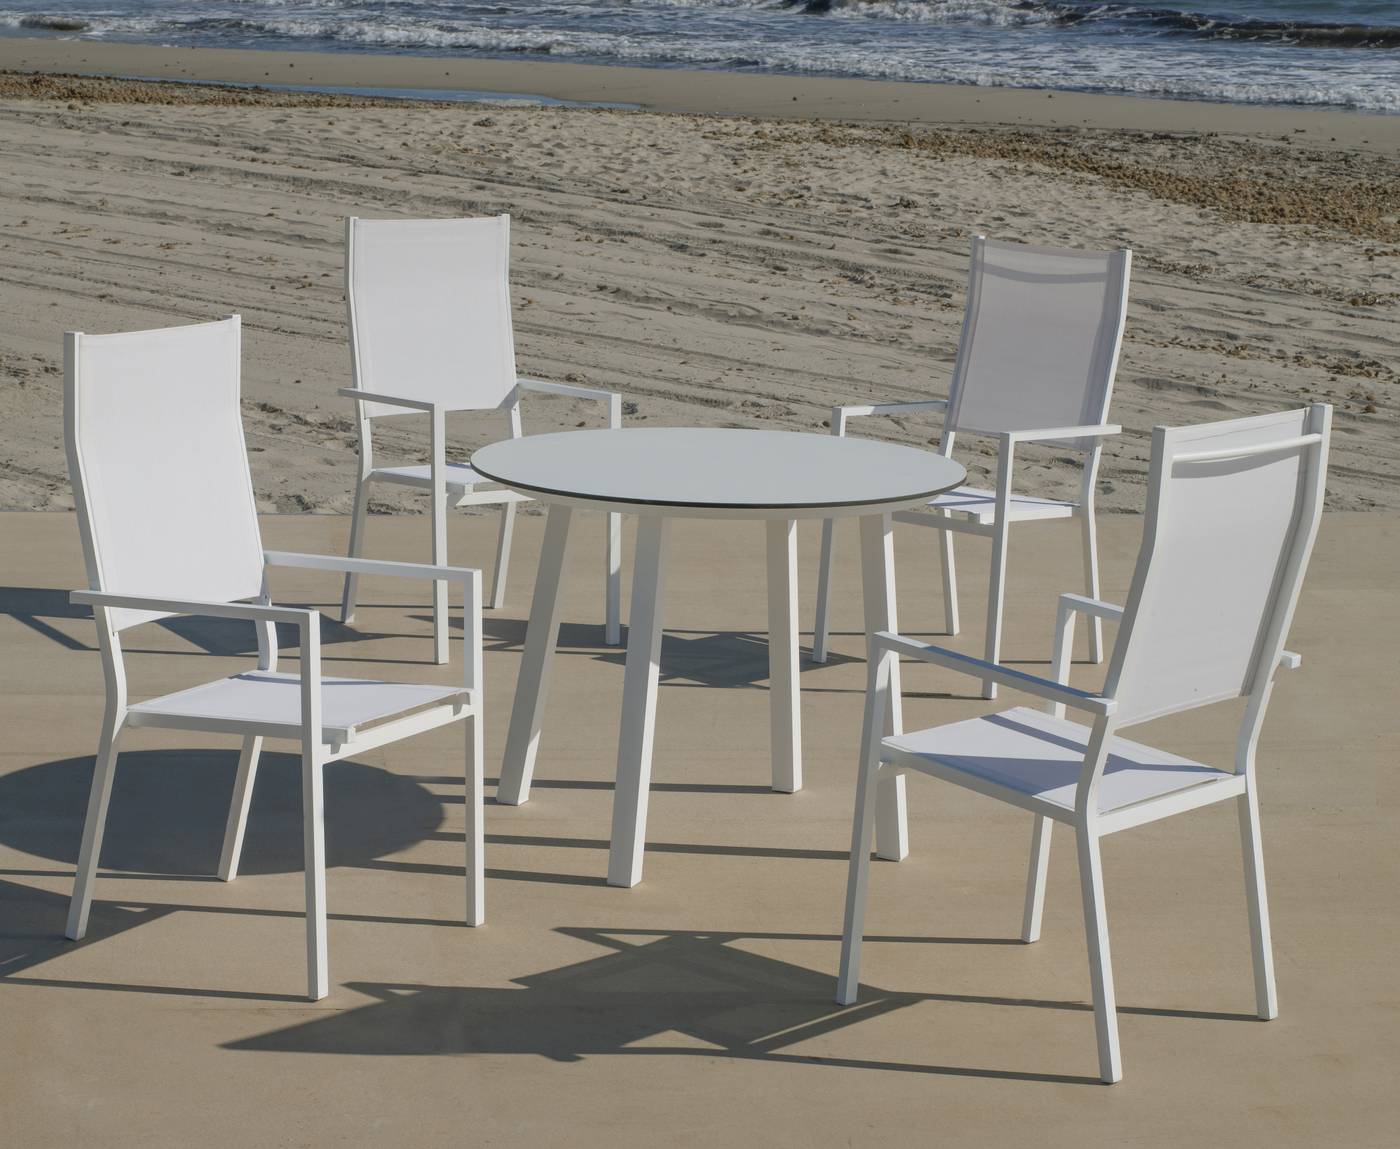 Conjunto de aluminio para jardín: Mesa redonda con tablero HPL de 100 cm + 4 sillones altos de textilen. Colores: blanco y antracita.